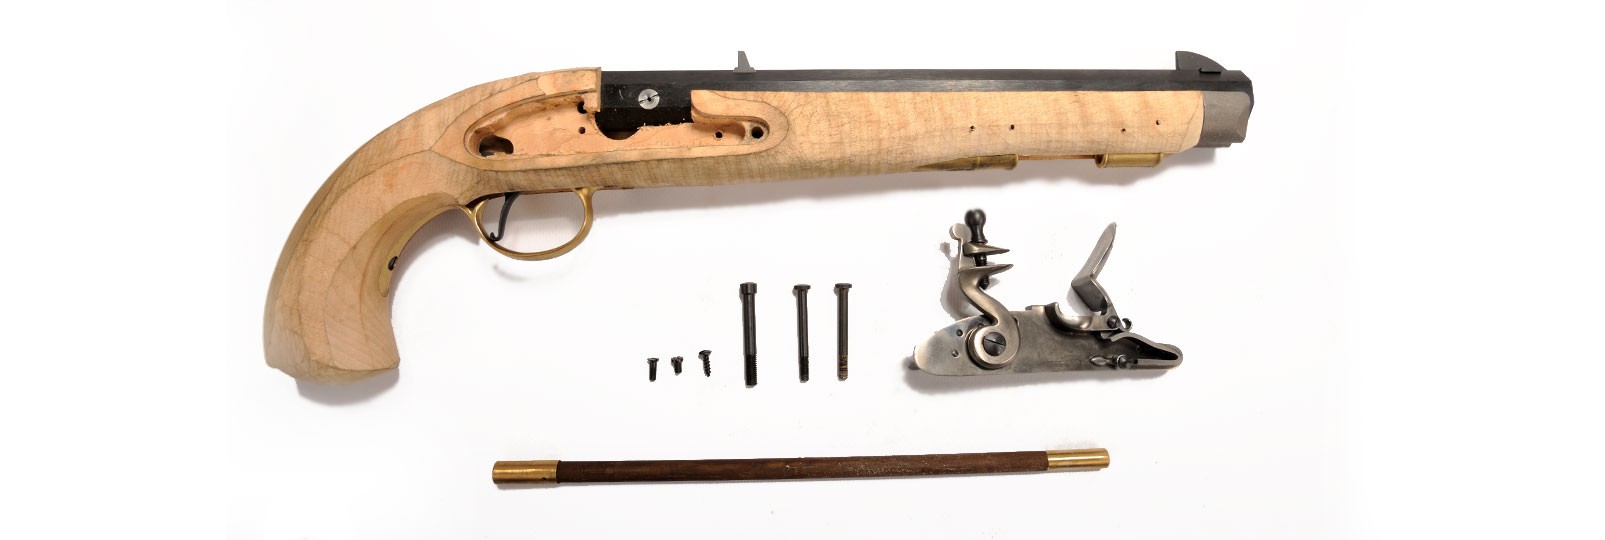 Kentucky "Maple" flintlock pistol kit